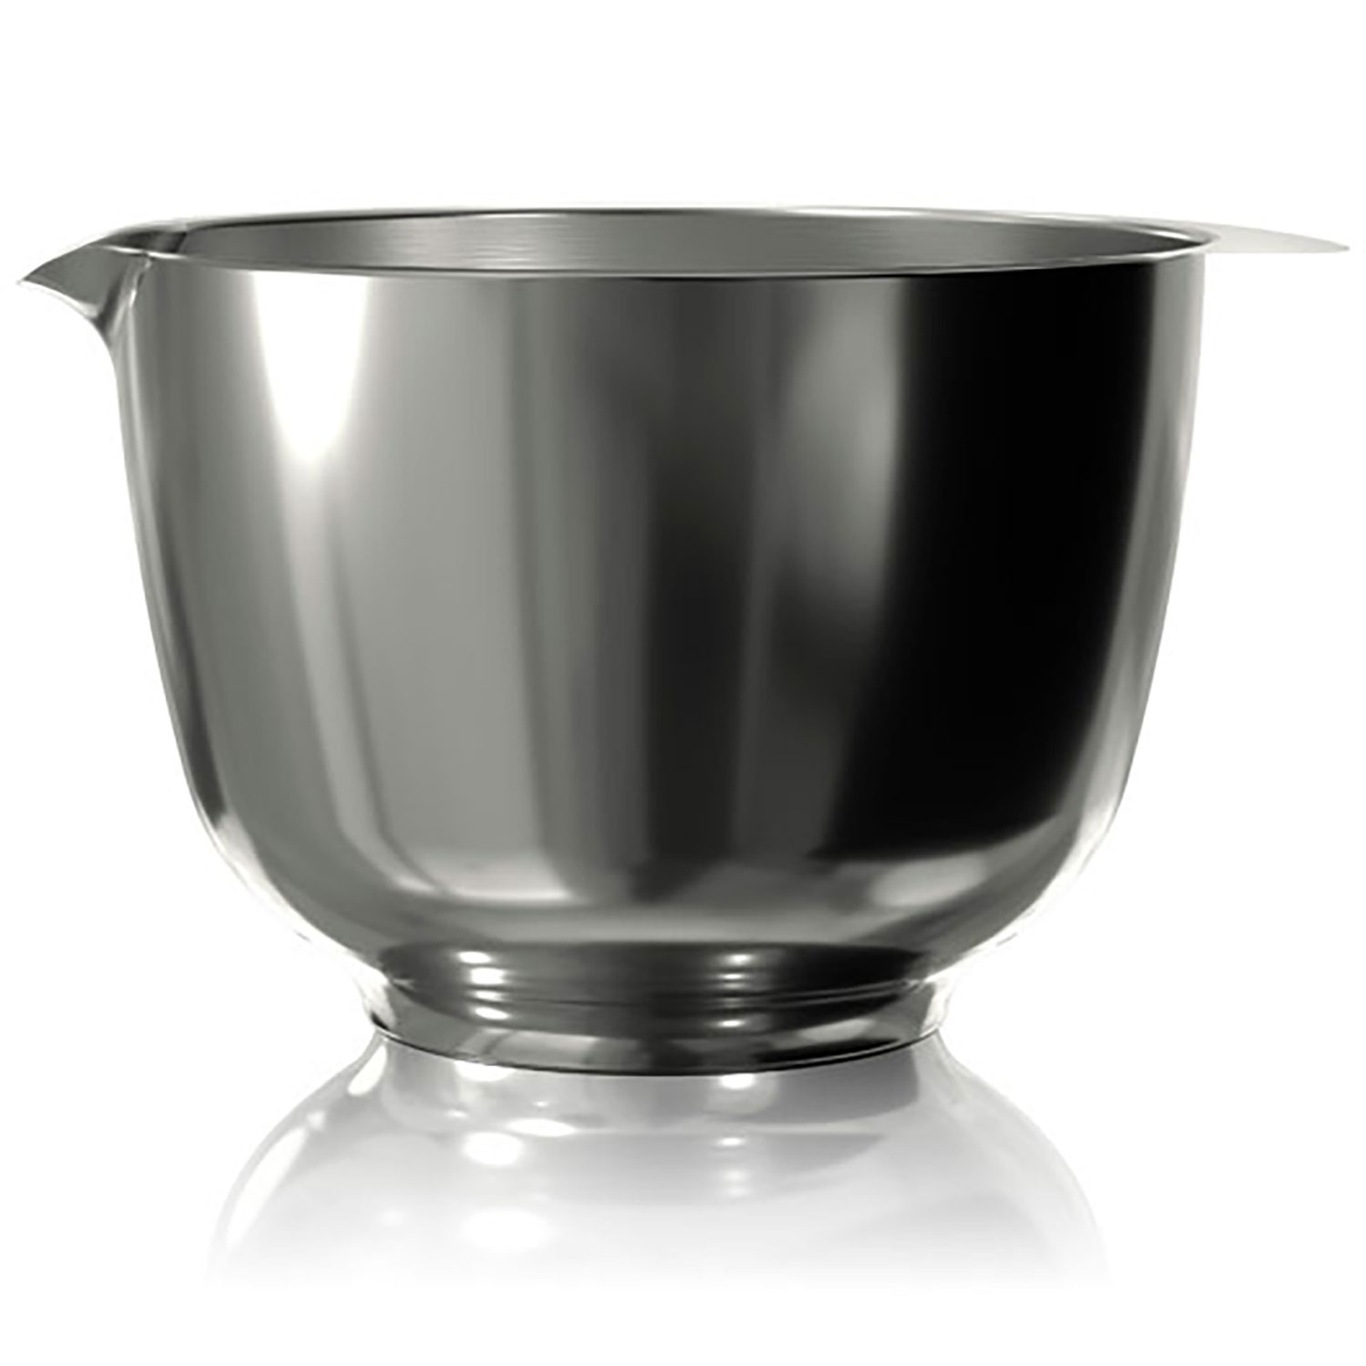 Margrethe-bowl 2.0l steel